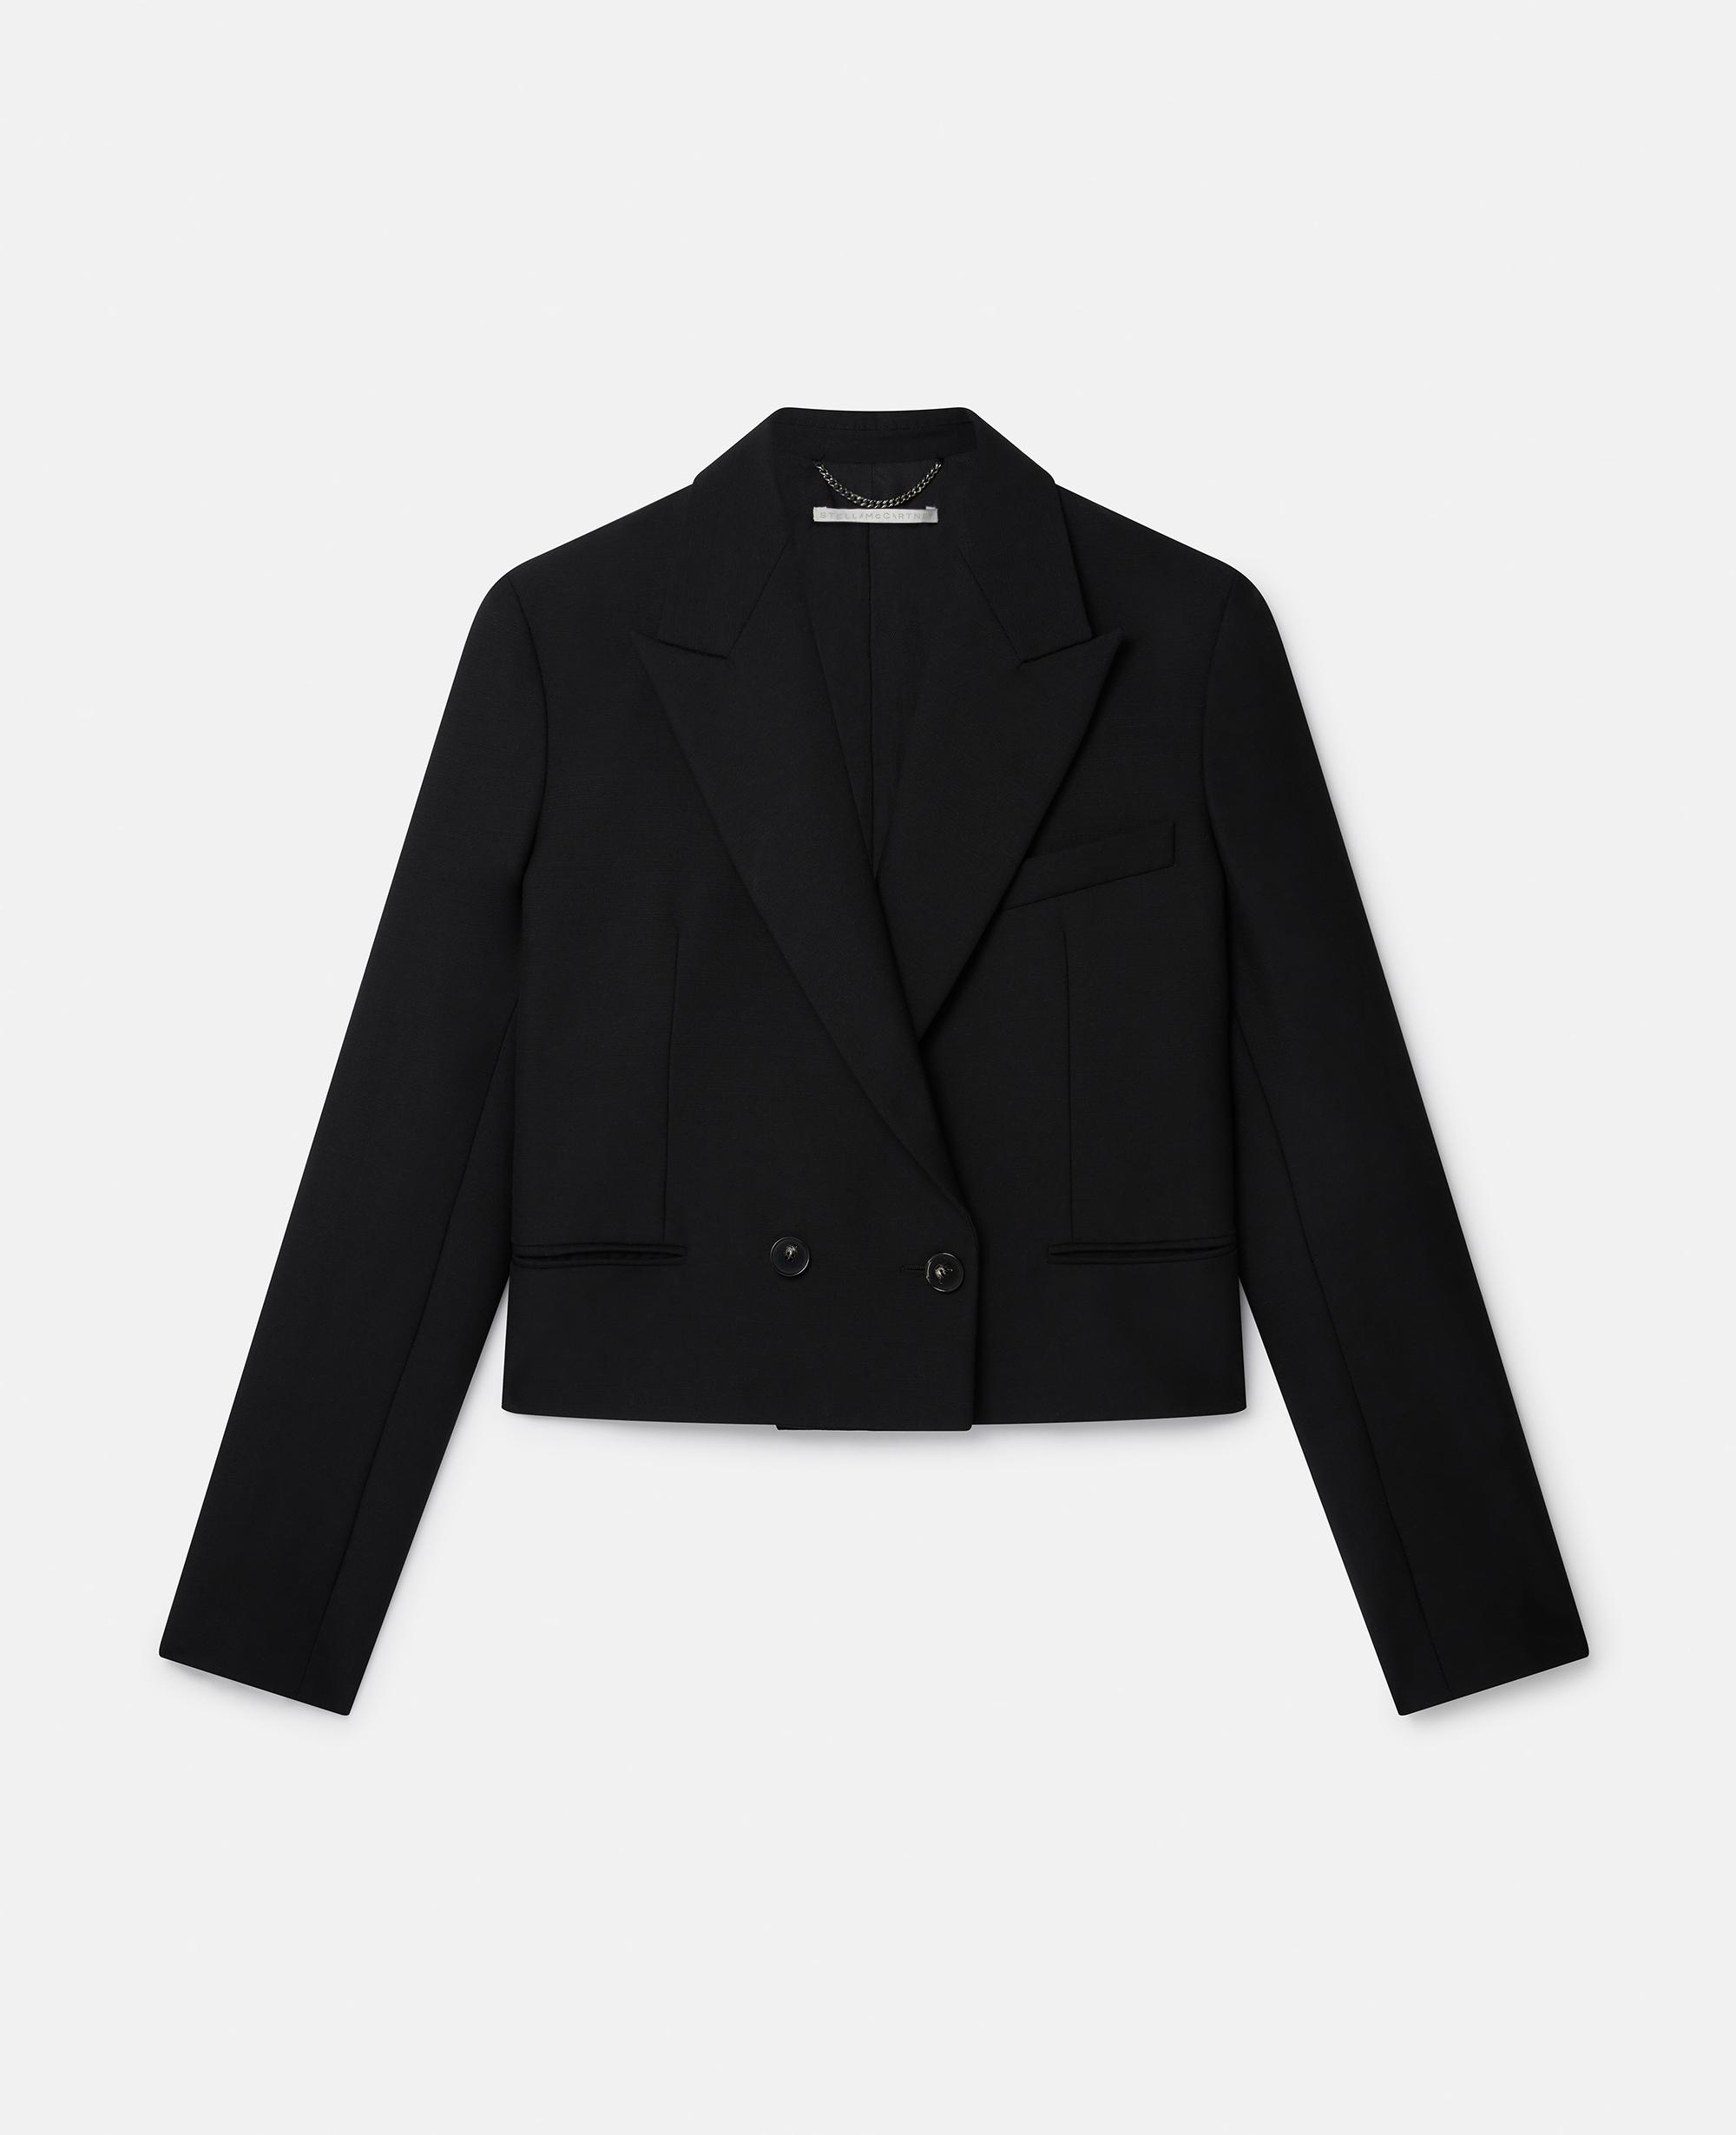 Stella McCartney Cropped Tuxedo Jacket in Black | Lyst